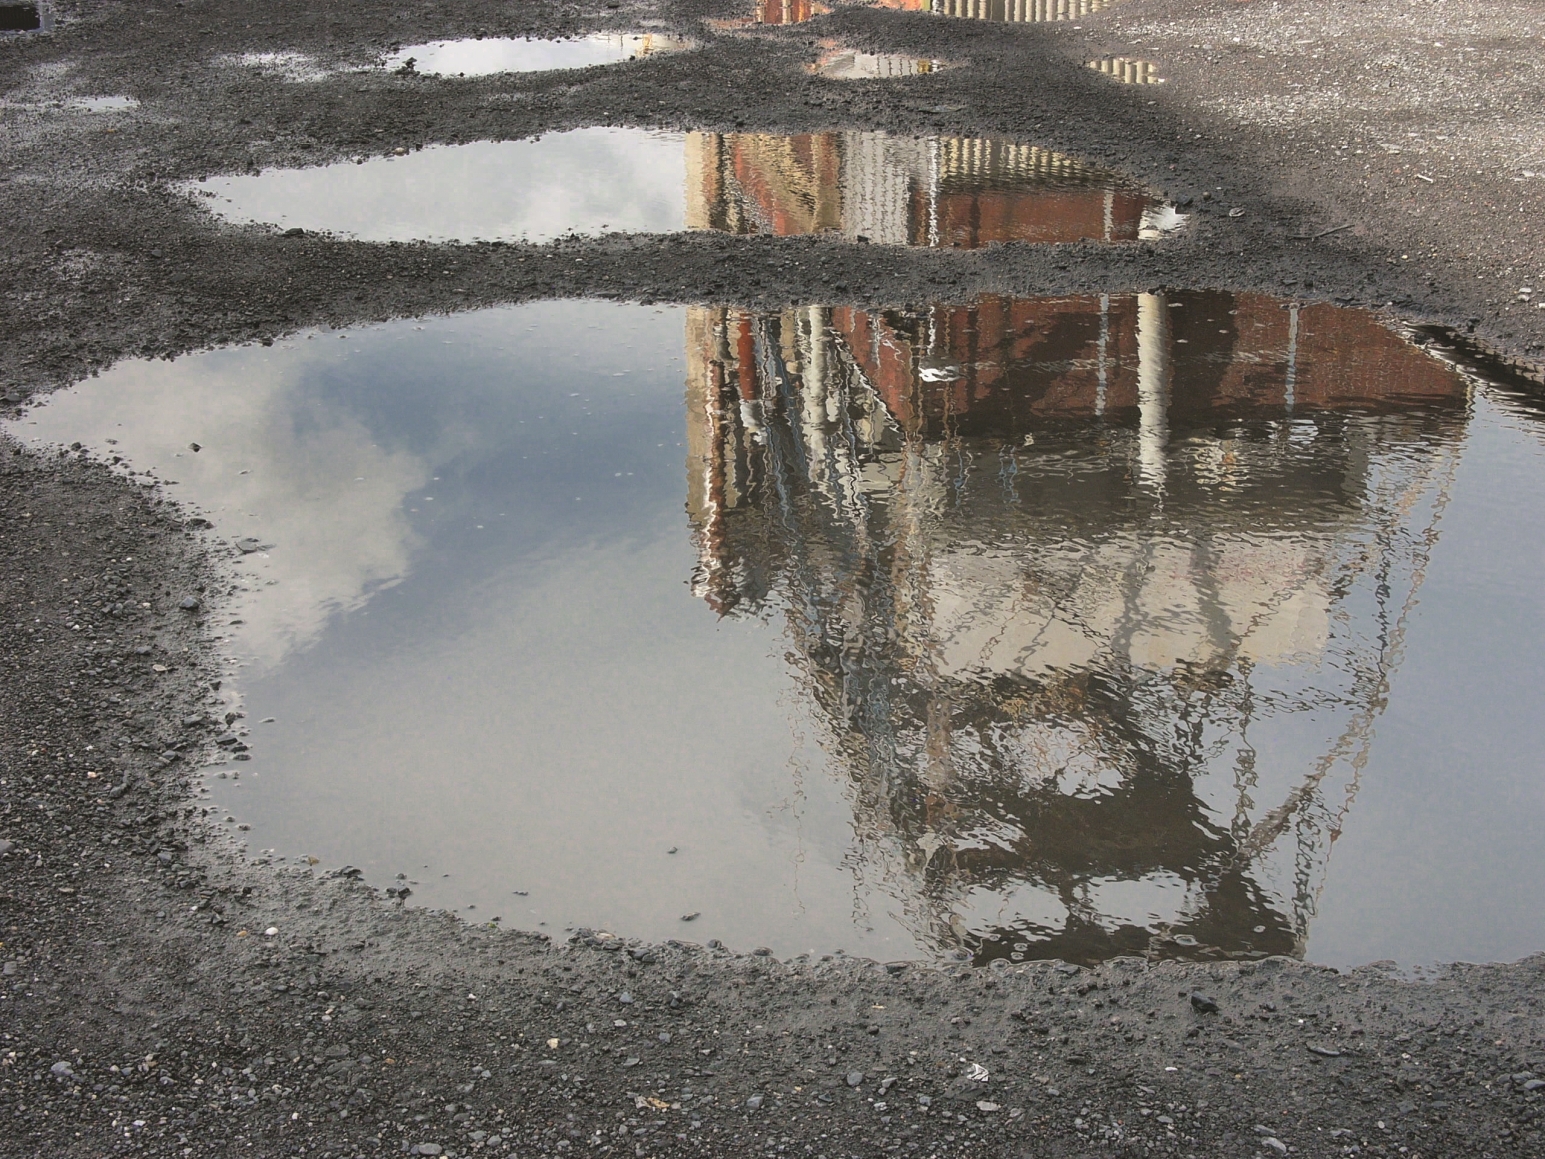 Das Bild zeigt zwei Pfützen auf einer Schotter-Kies-Fläche, in der sich ein Industriegebäude spiegelt.